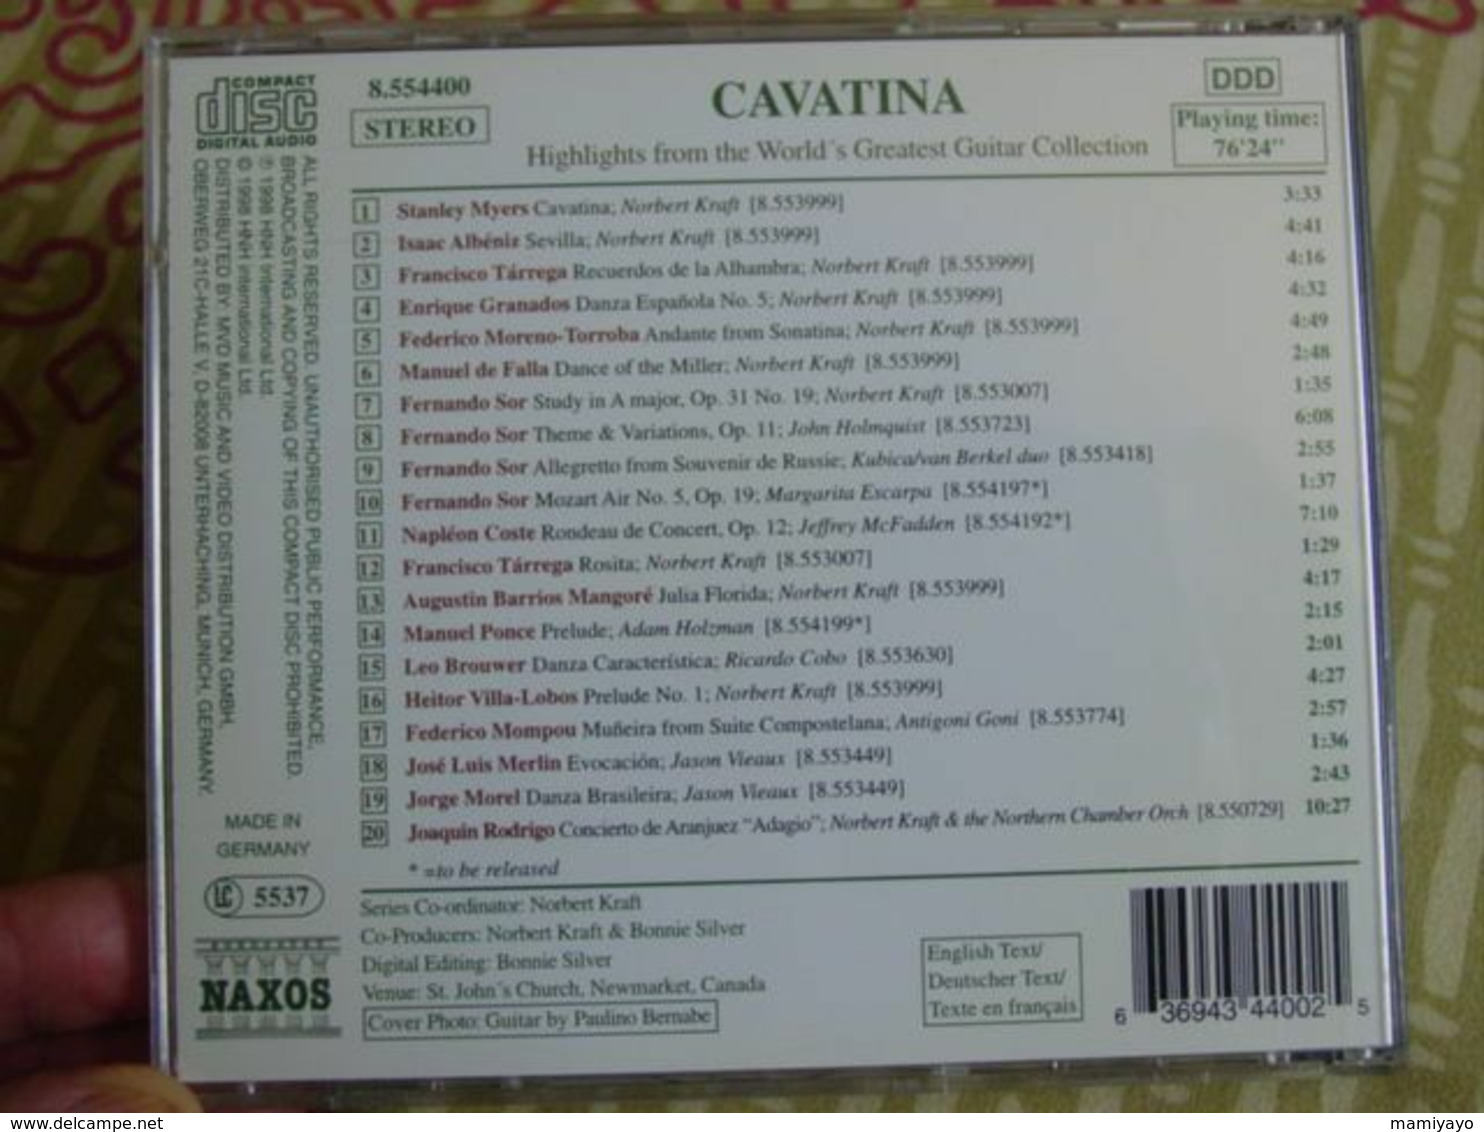 Classique - Guitar Collection * / CAVATINA -Grands Succès De La Guitare . - Instrumental